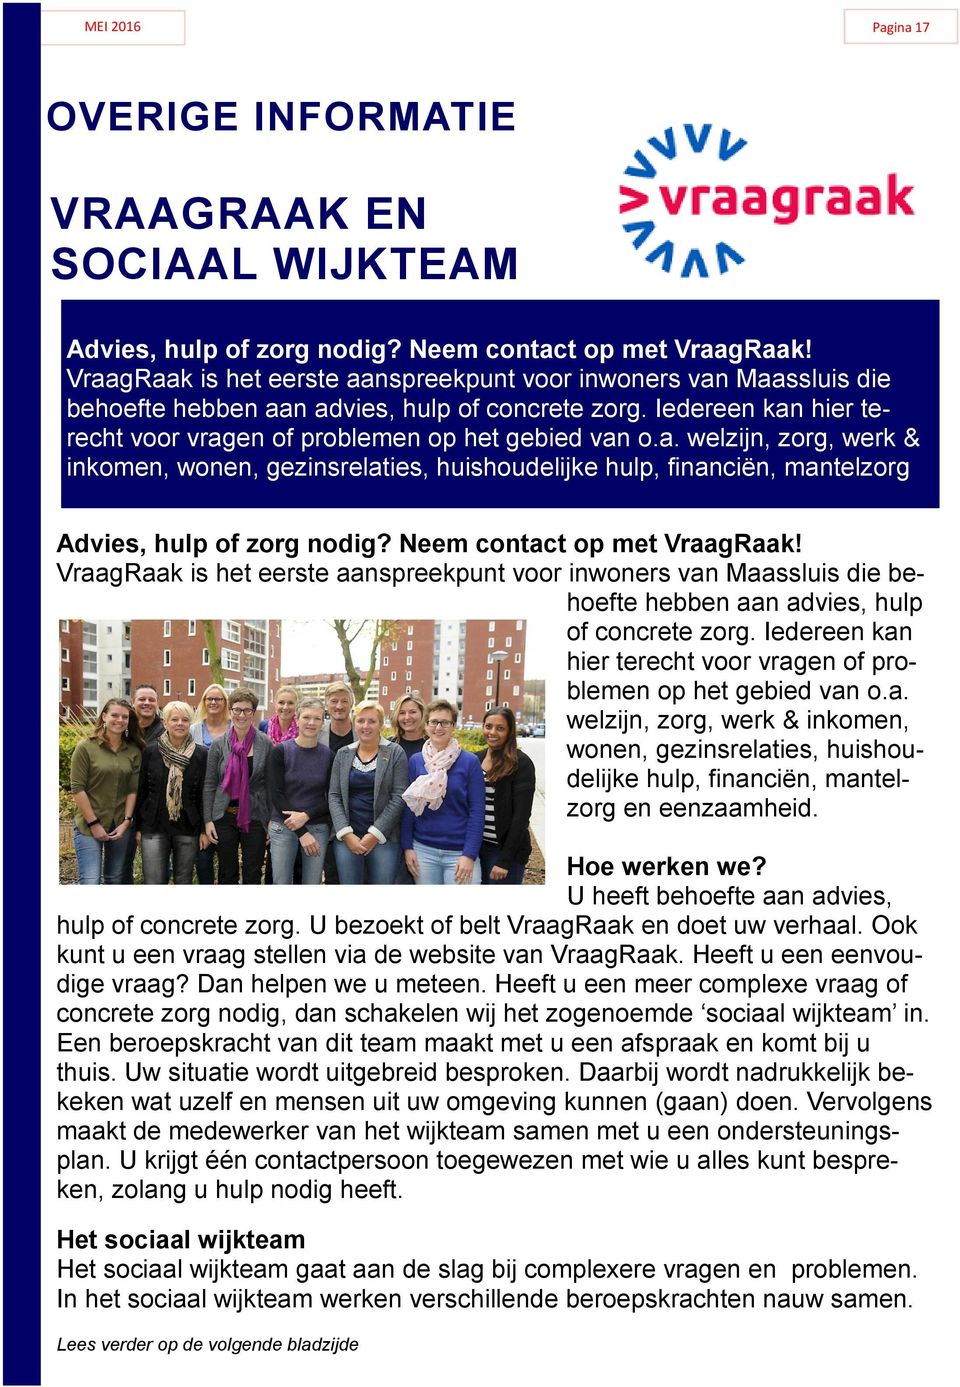 Neem contact op met VraagRaak! VraagRaak is het eerste aanspreekpunt voor inwoners van Maassluis die behoefte hebben aan advies, hulp of concrete zorg.